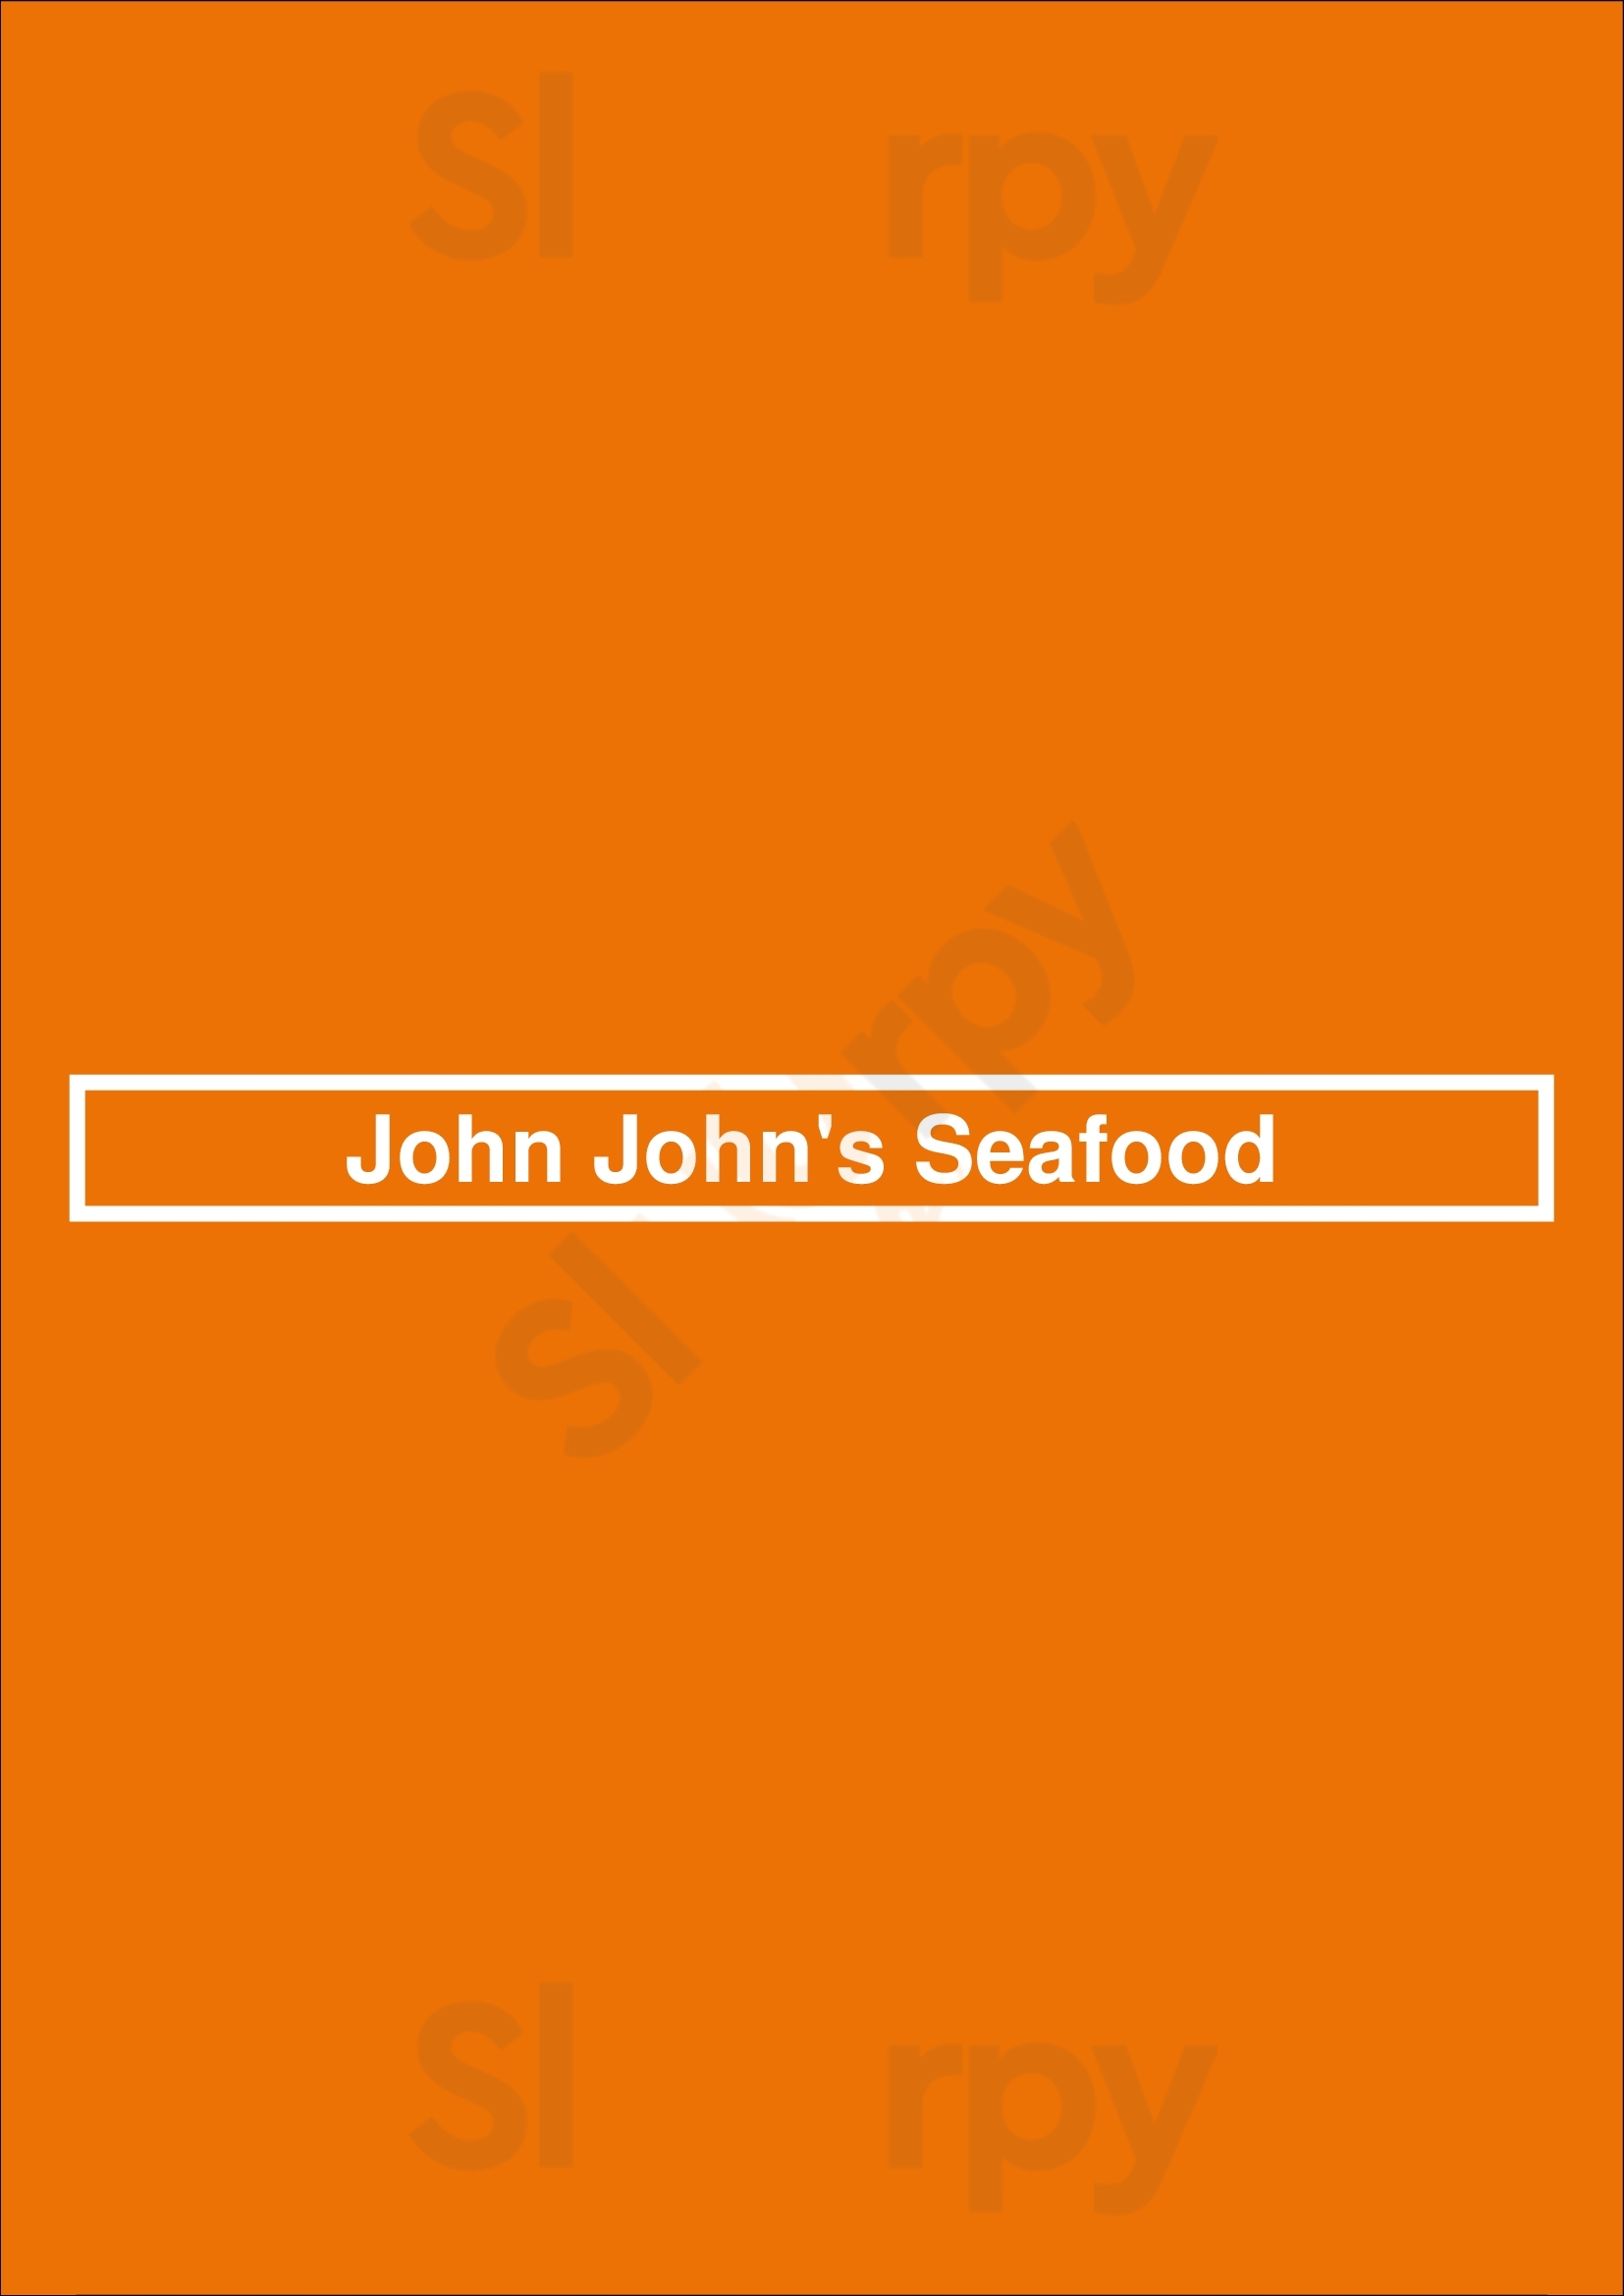 John John's Seafood Cleveland Menu - 1